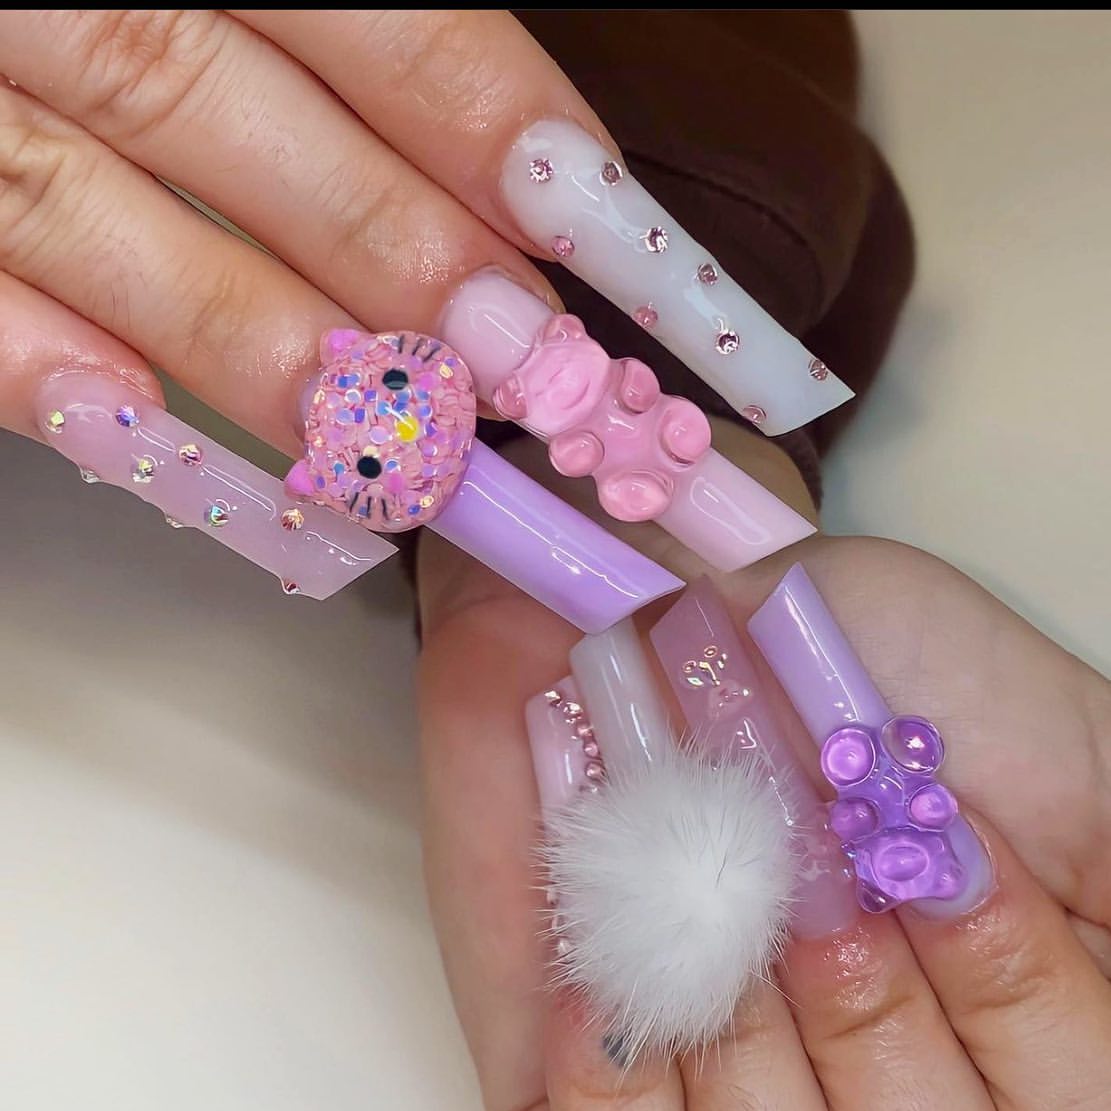 Glittery pink Hello Kitty & LV nails💖🩷 #luxurynails #luxury #hellok